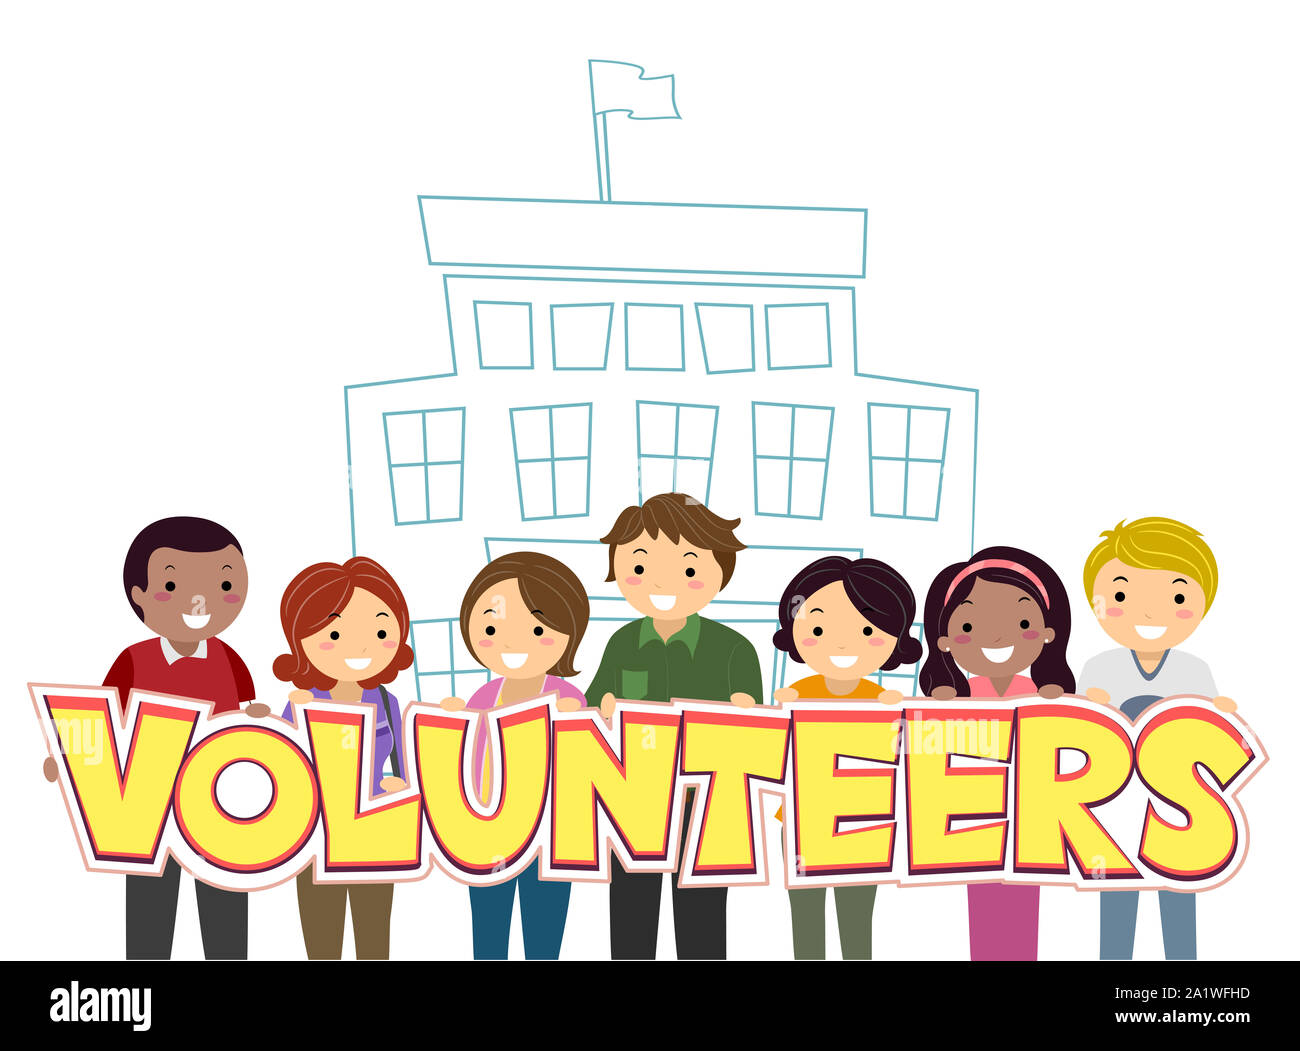 Volunteer image